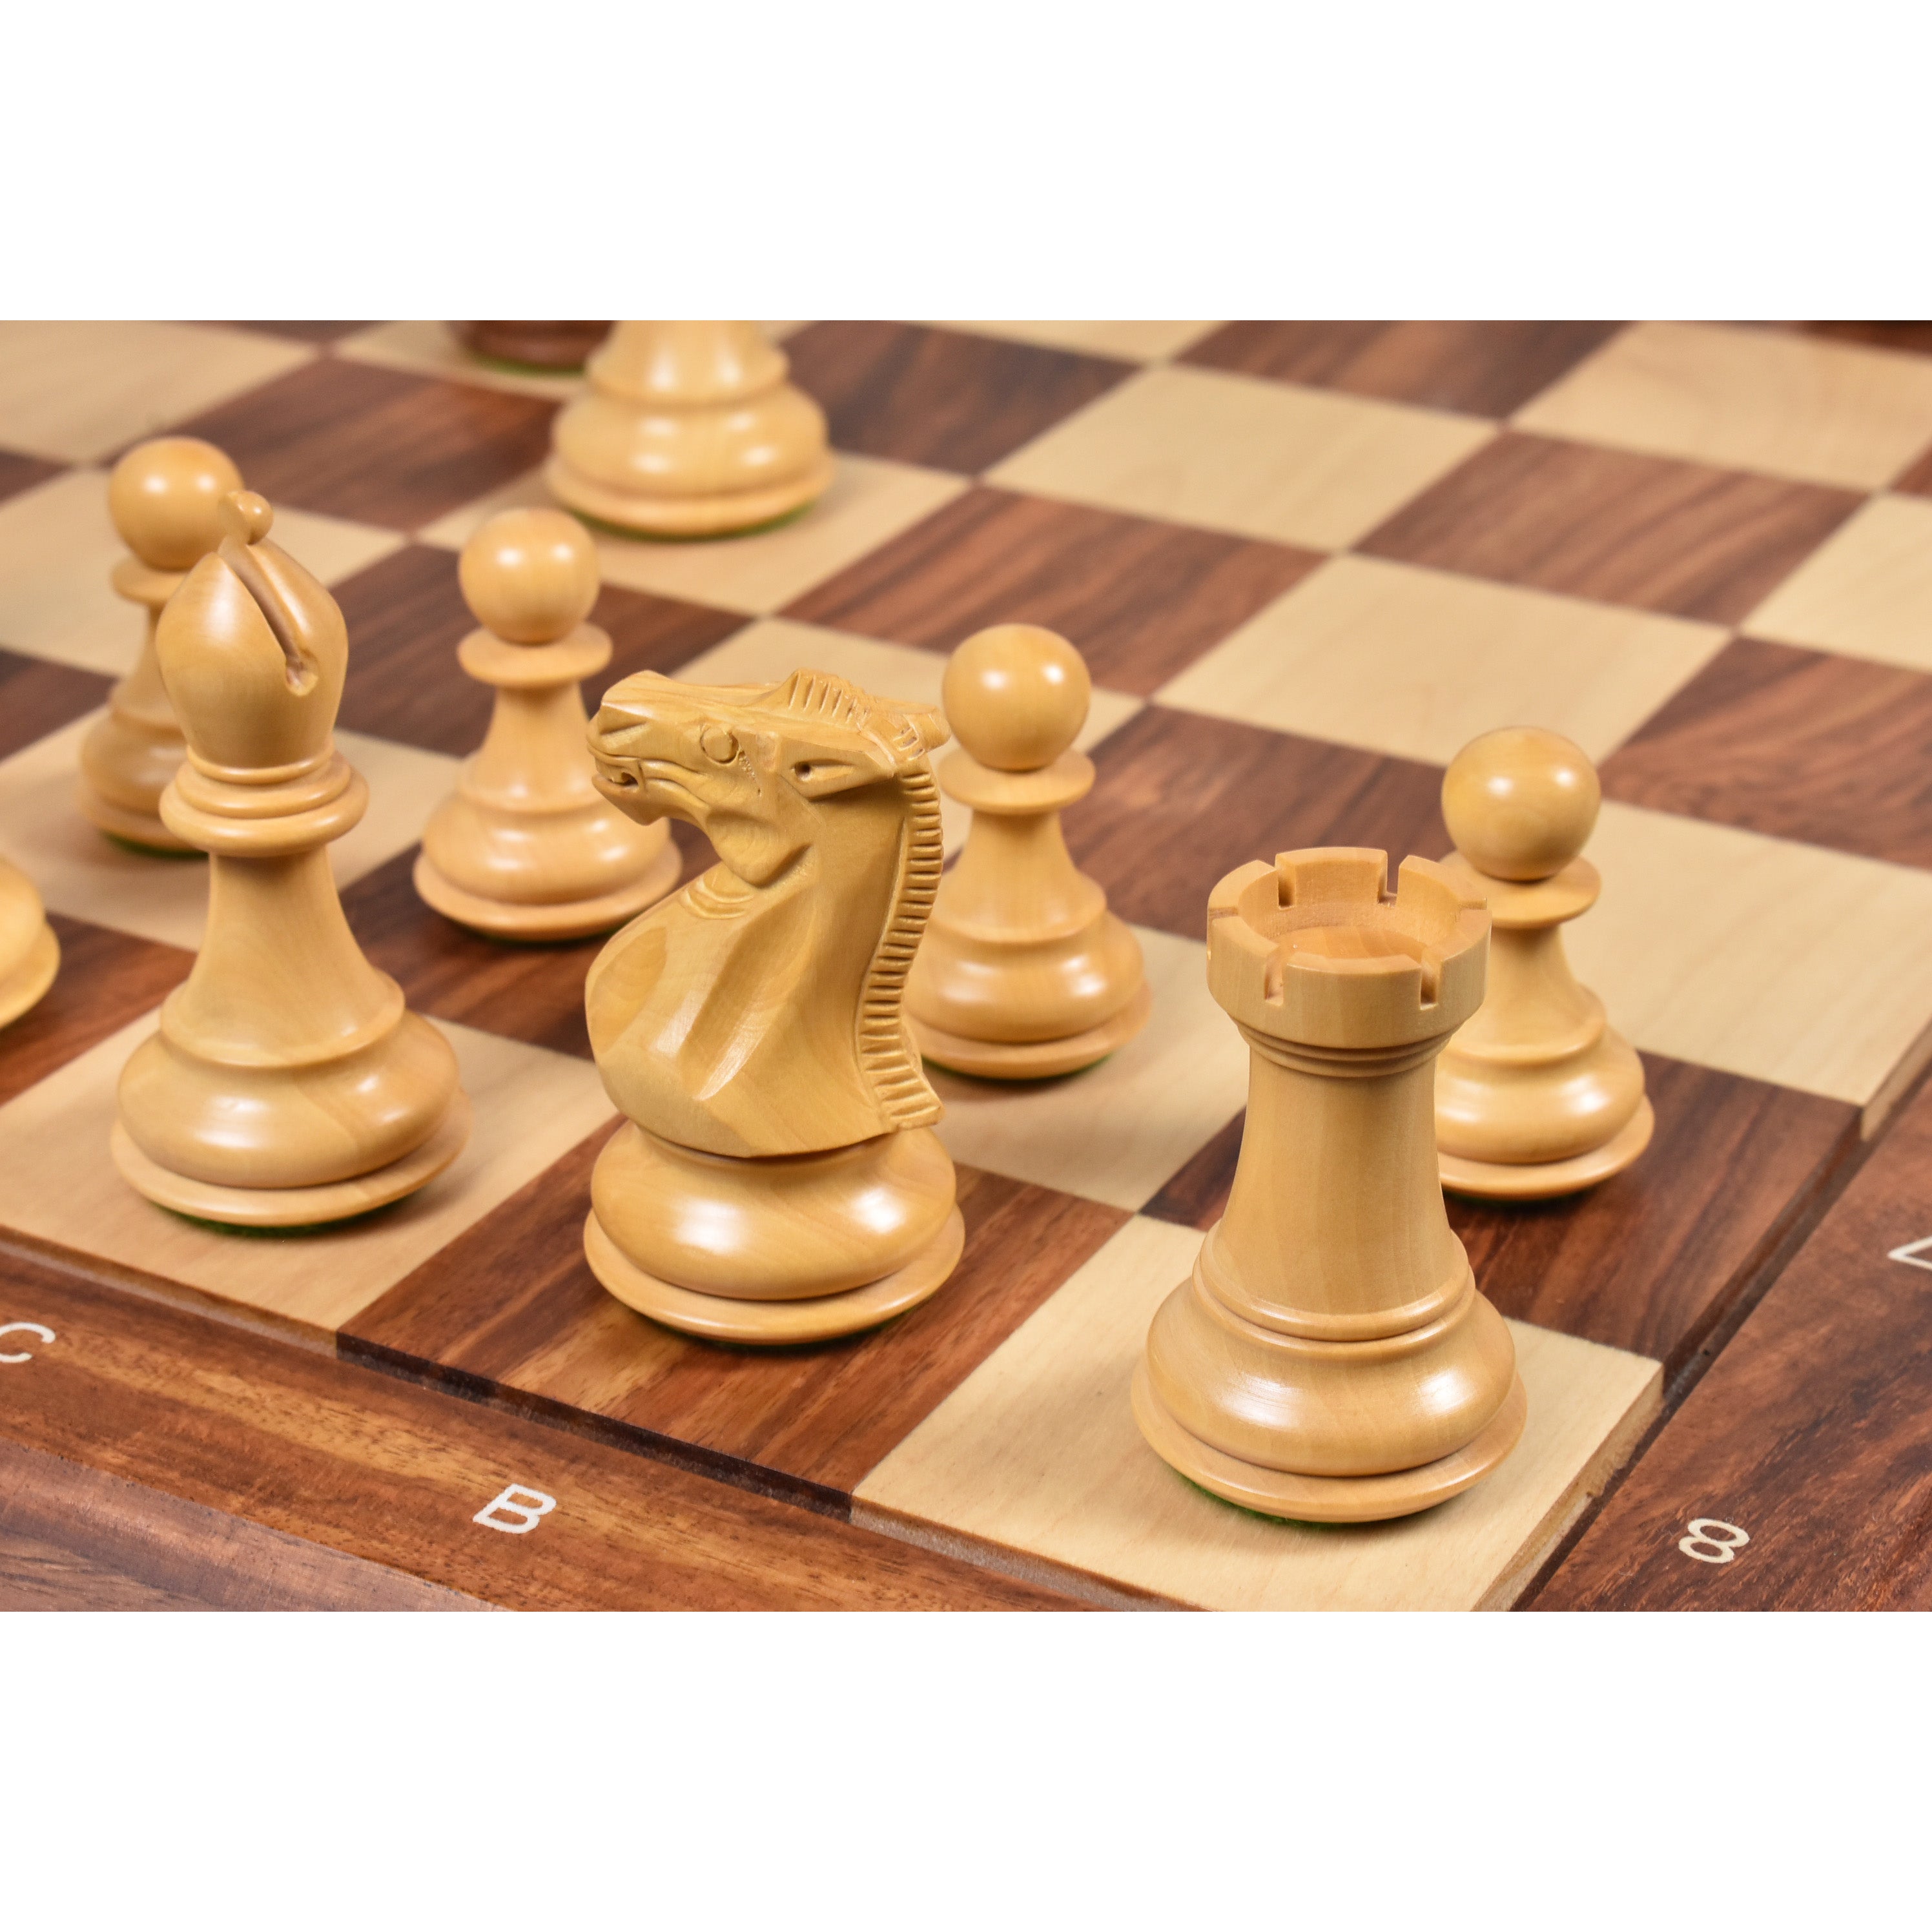 3.1 Pro Staunton Luxury Chess Set- Chess Pieces Only - Triple